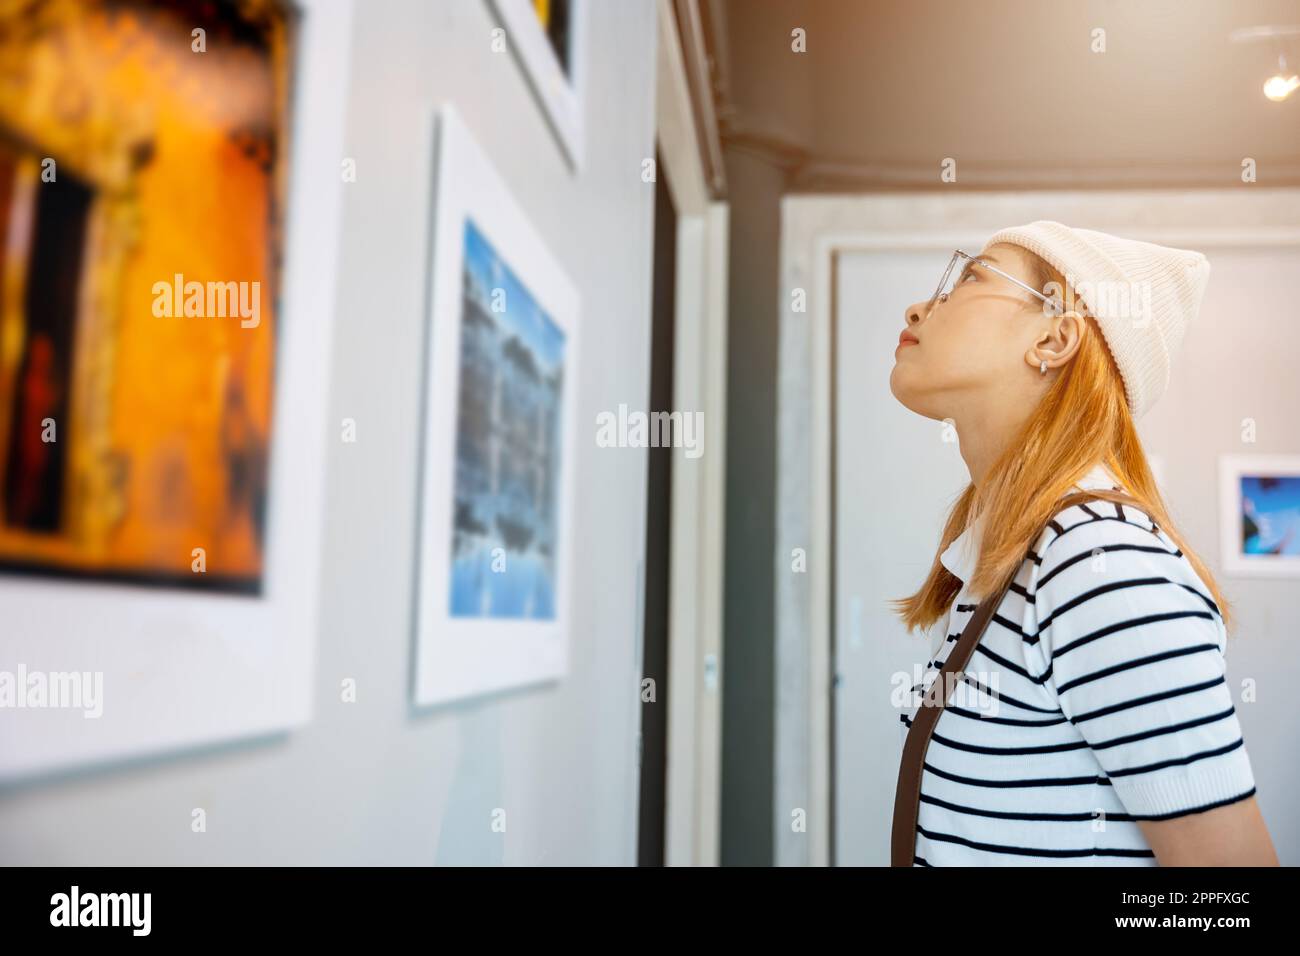 Donna asiatica che guarda una galleria d'arte di fronte a quadri colorati incorniciati Foto Stock